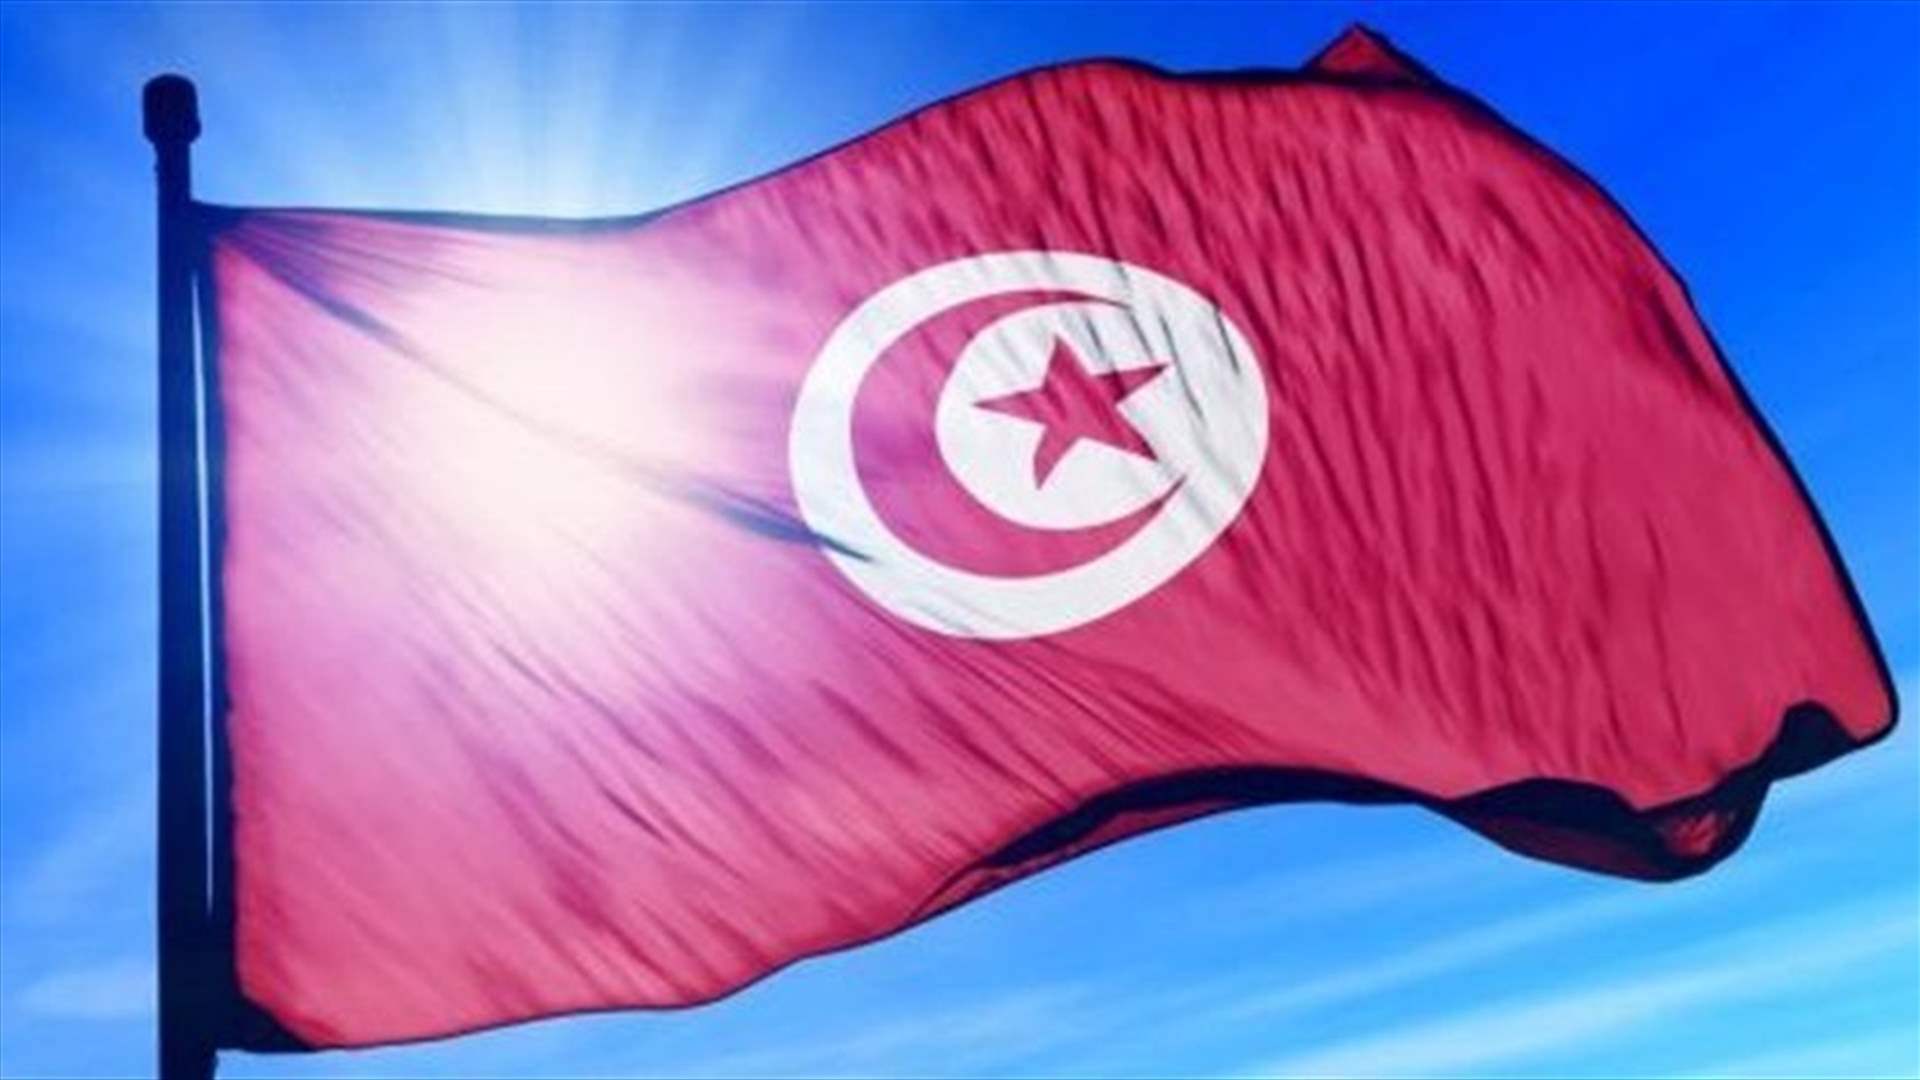 السلطات التونسية ألقت القبض على منظم عمليات هجرة غير قانونية